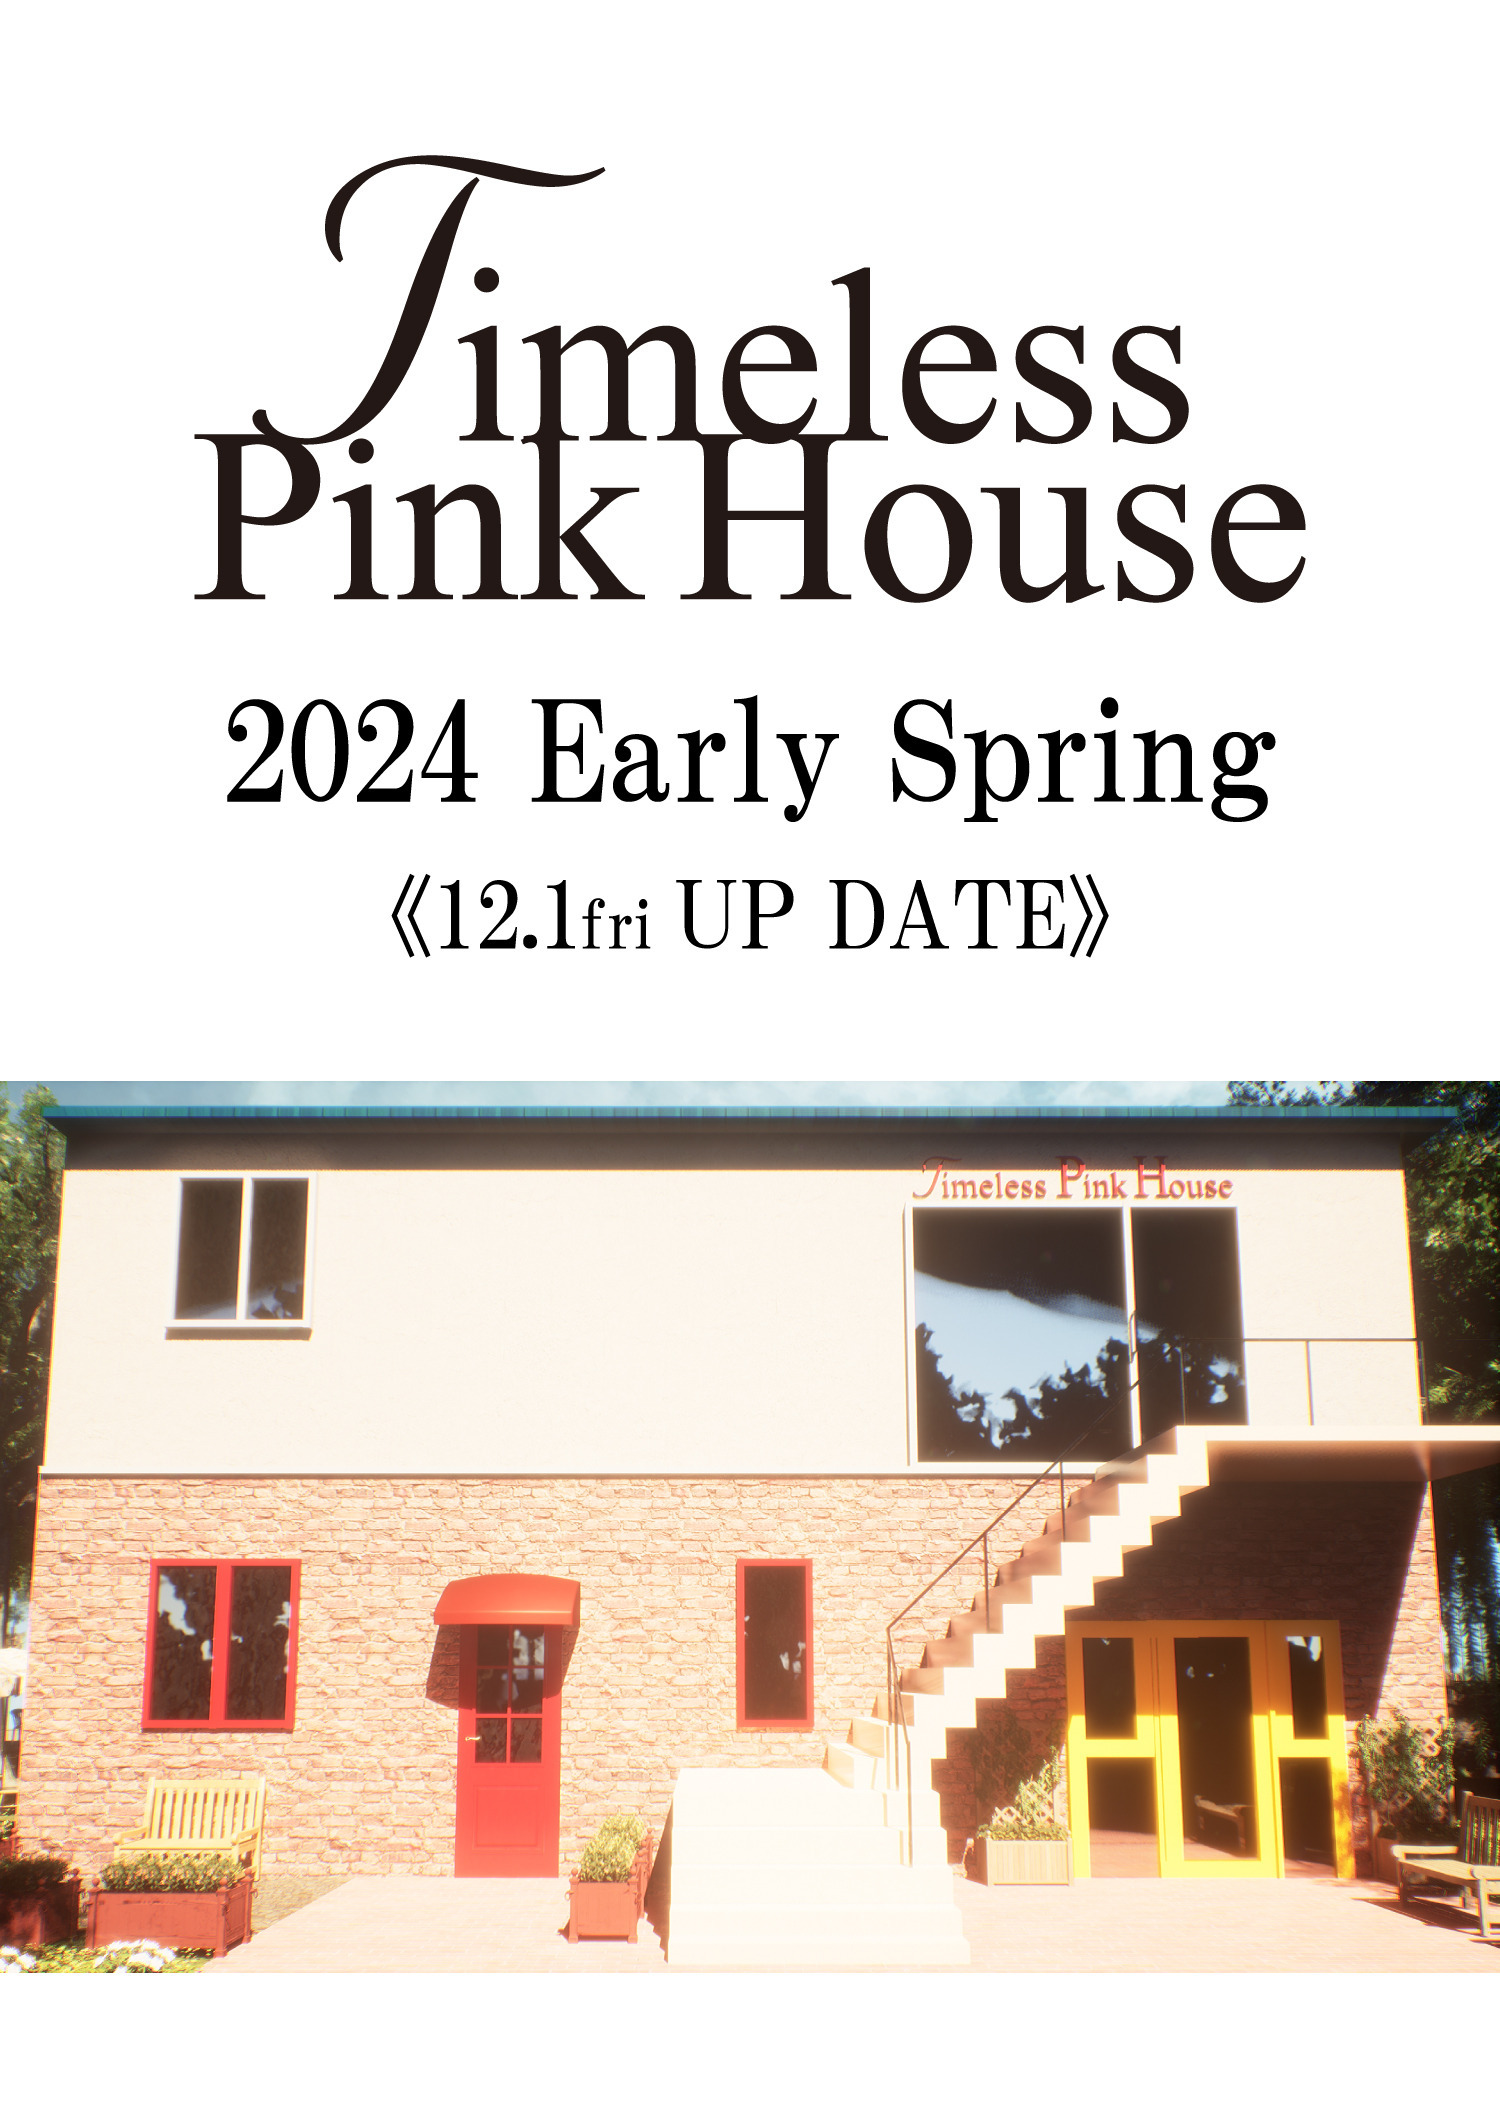 《12/1(fri) UP DATE》Timeless Pink House ー 永遠の少女になれるバーチャル空間